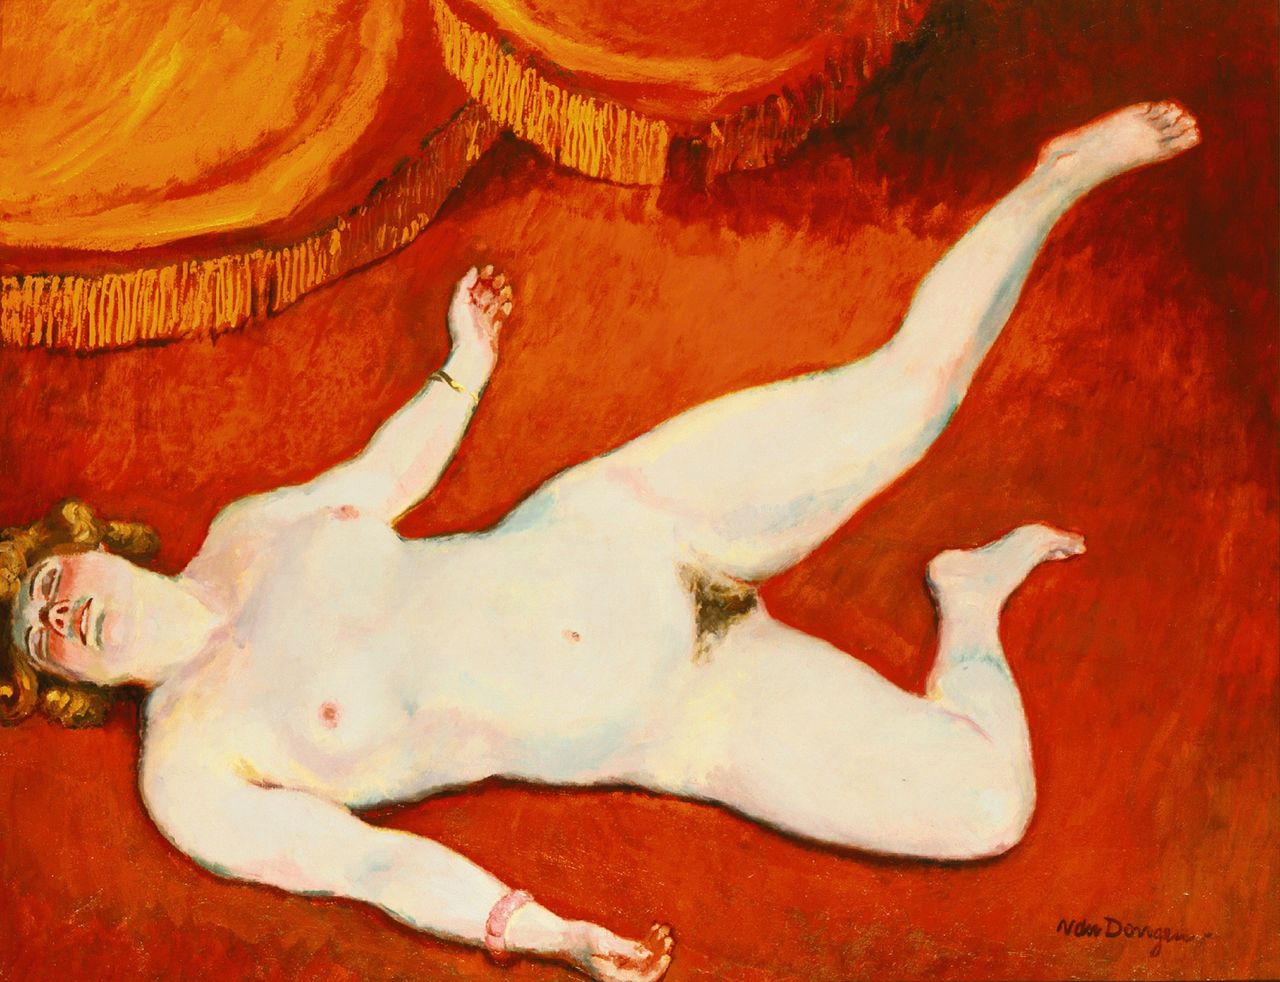 Kees van Dongen, "Femme Nue Blonde" (1906)